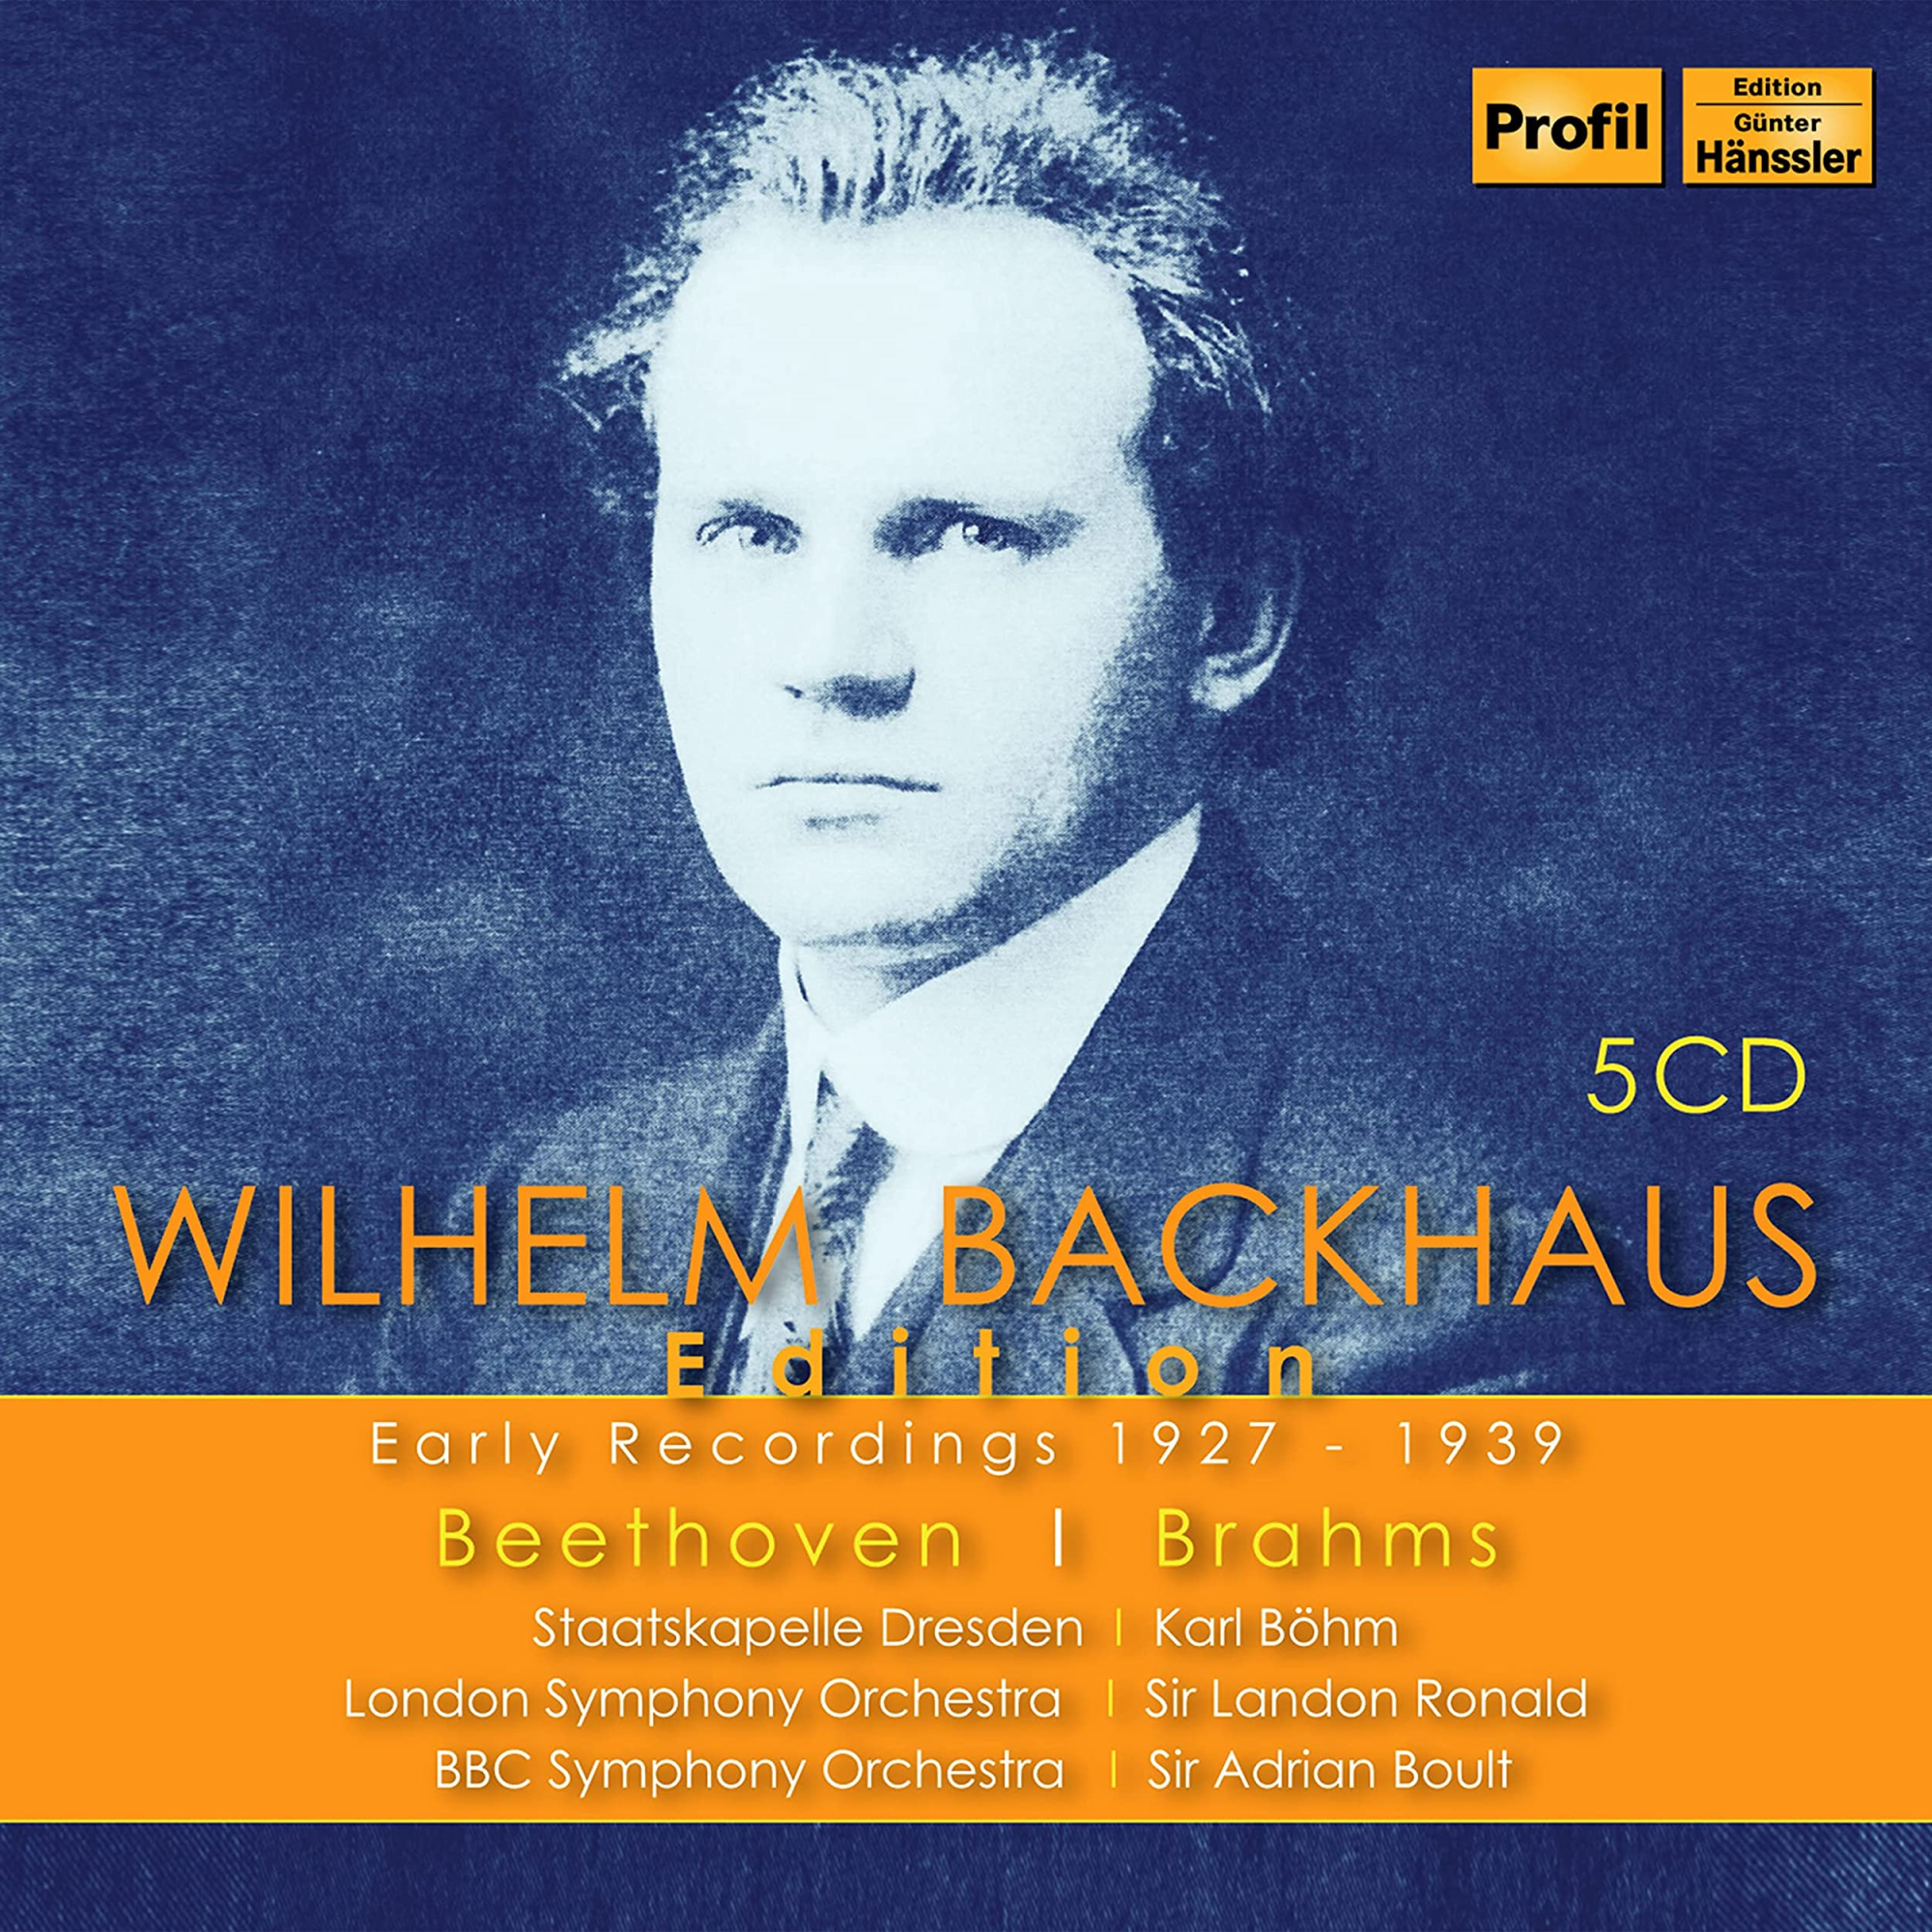 Audio Cd Wilhelm Backhaus Edition (5 Cd) NUOVO SIGILLATO, EDIZIONE DEL 03/02/2023 SUBITO DISPONIBILE